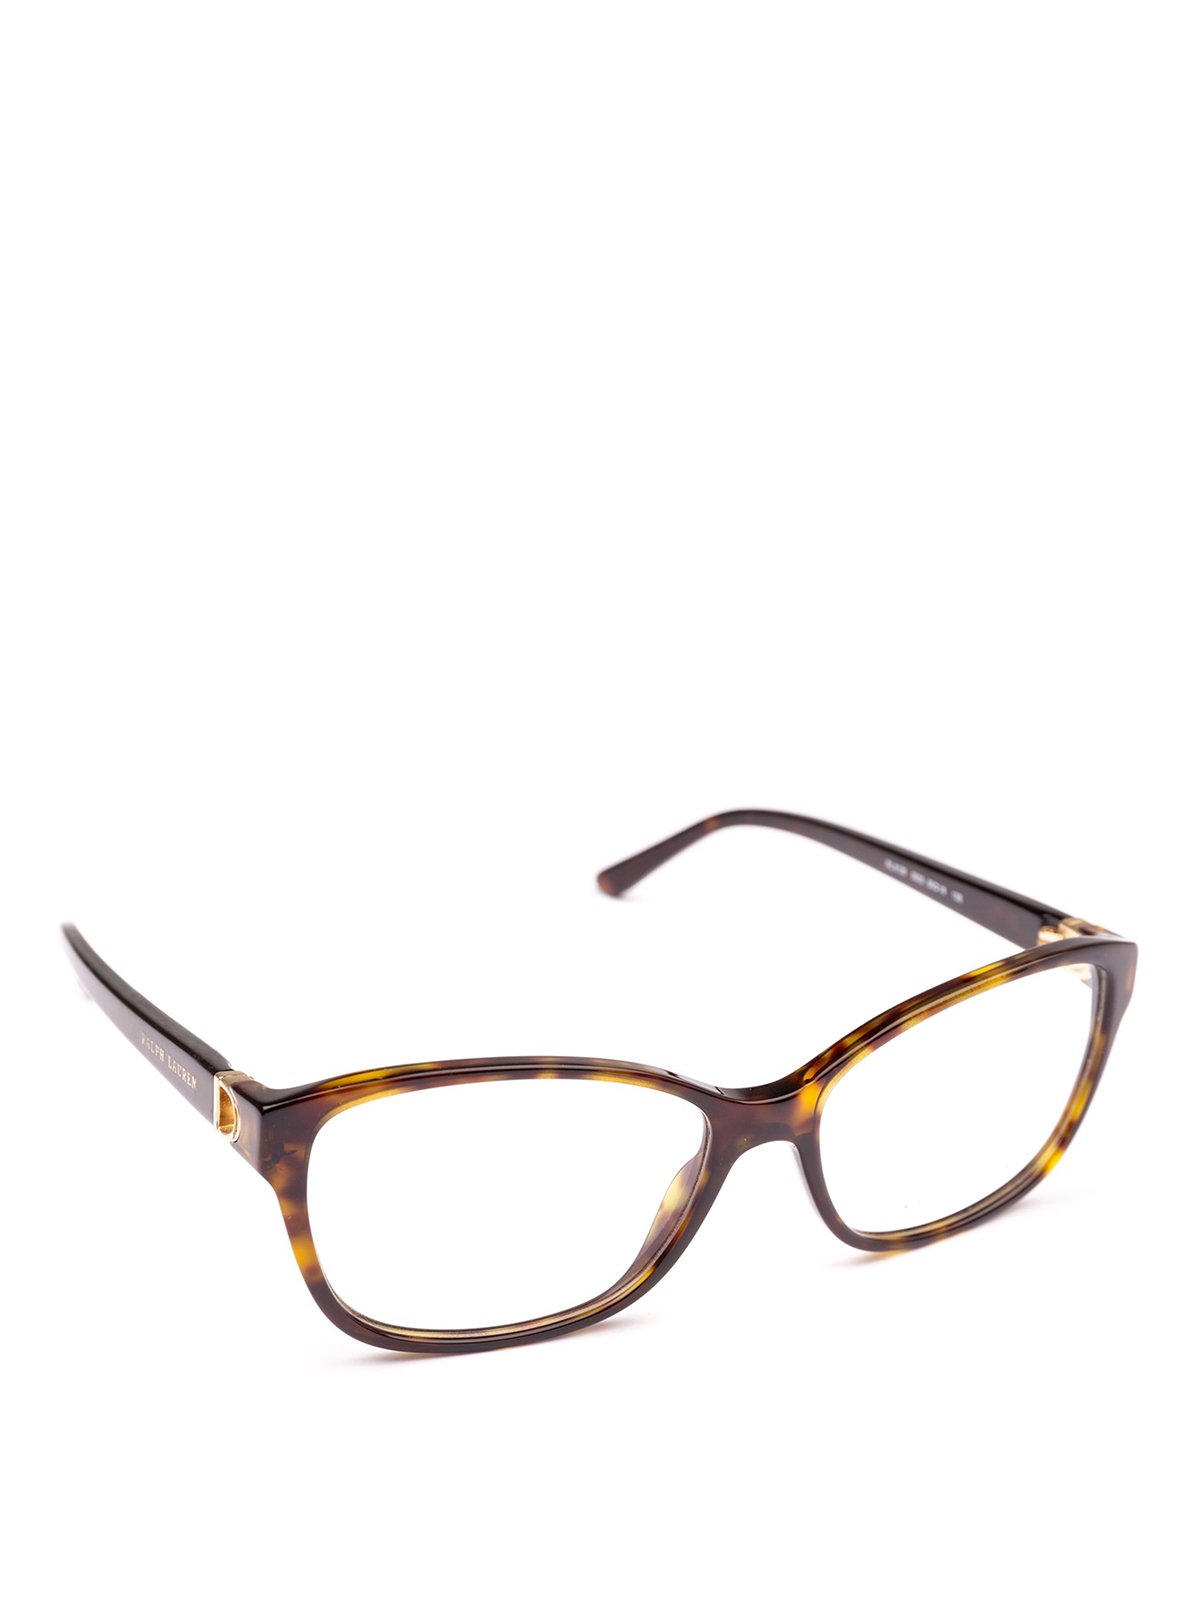 Polo Ralph Lauren - Rectangular cat-eye tortoise frame glasses ...